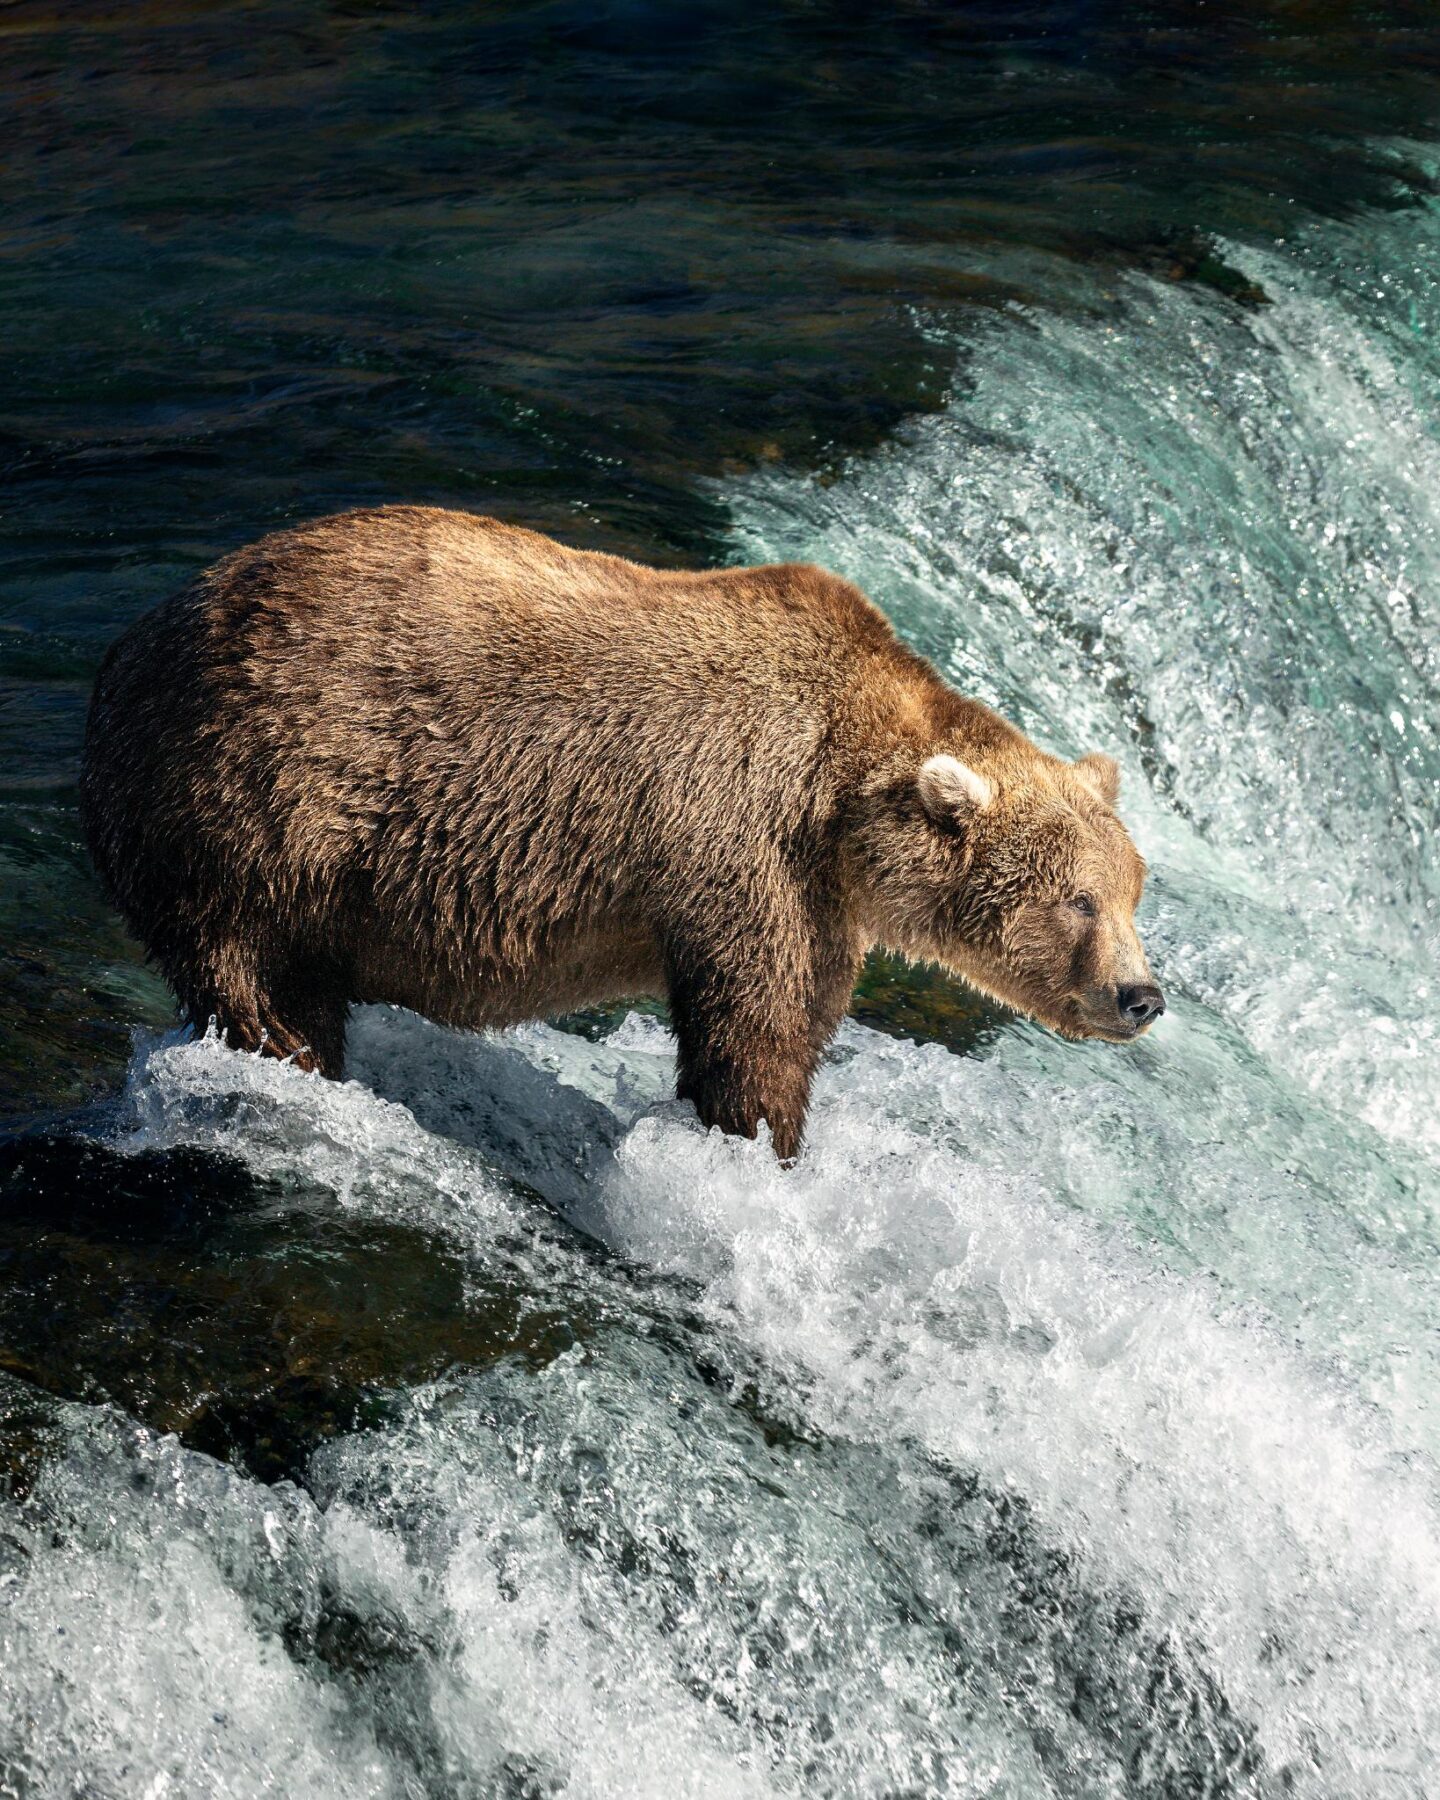 Minder bekende plekken in Amerika beer in Alaska